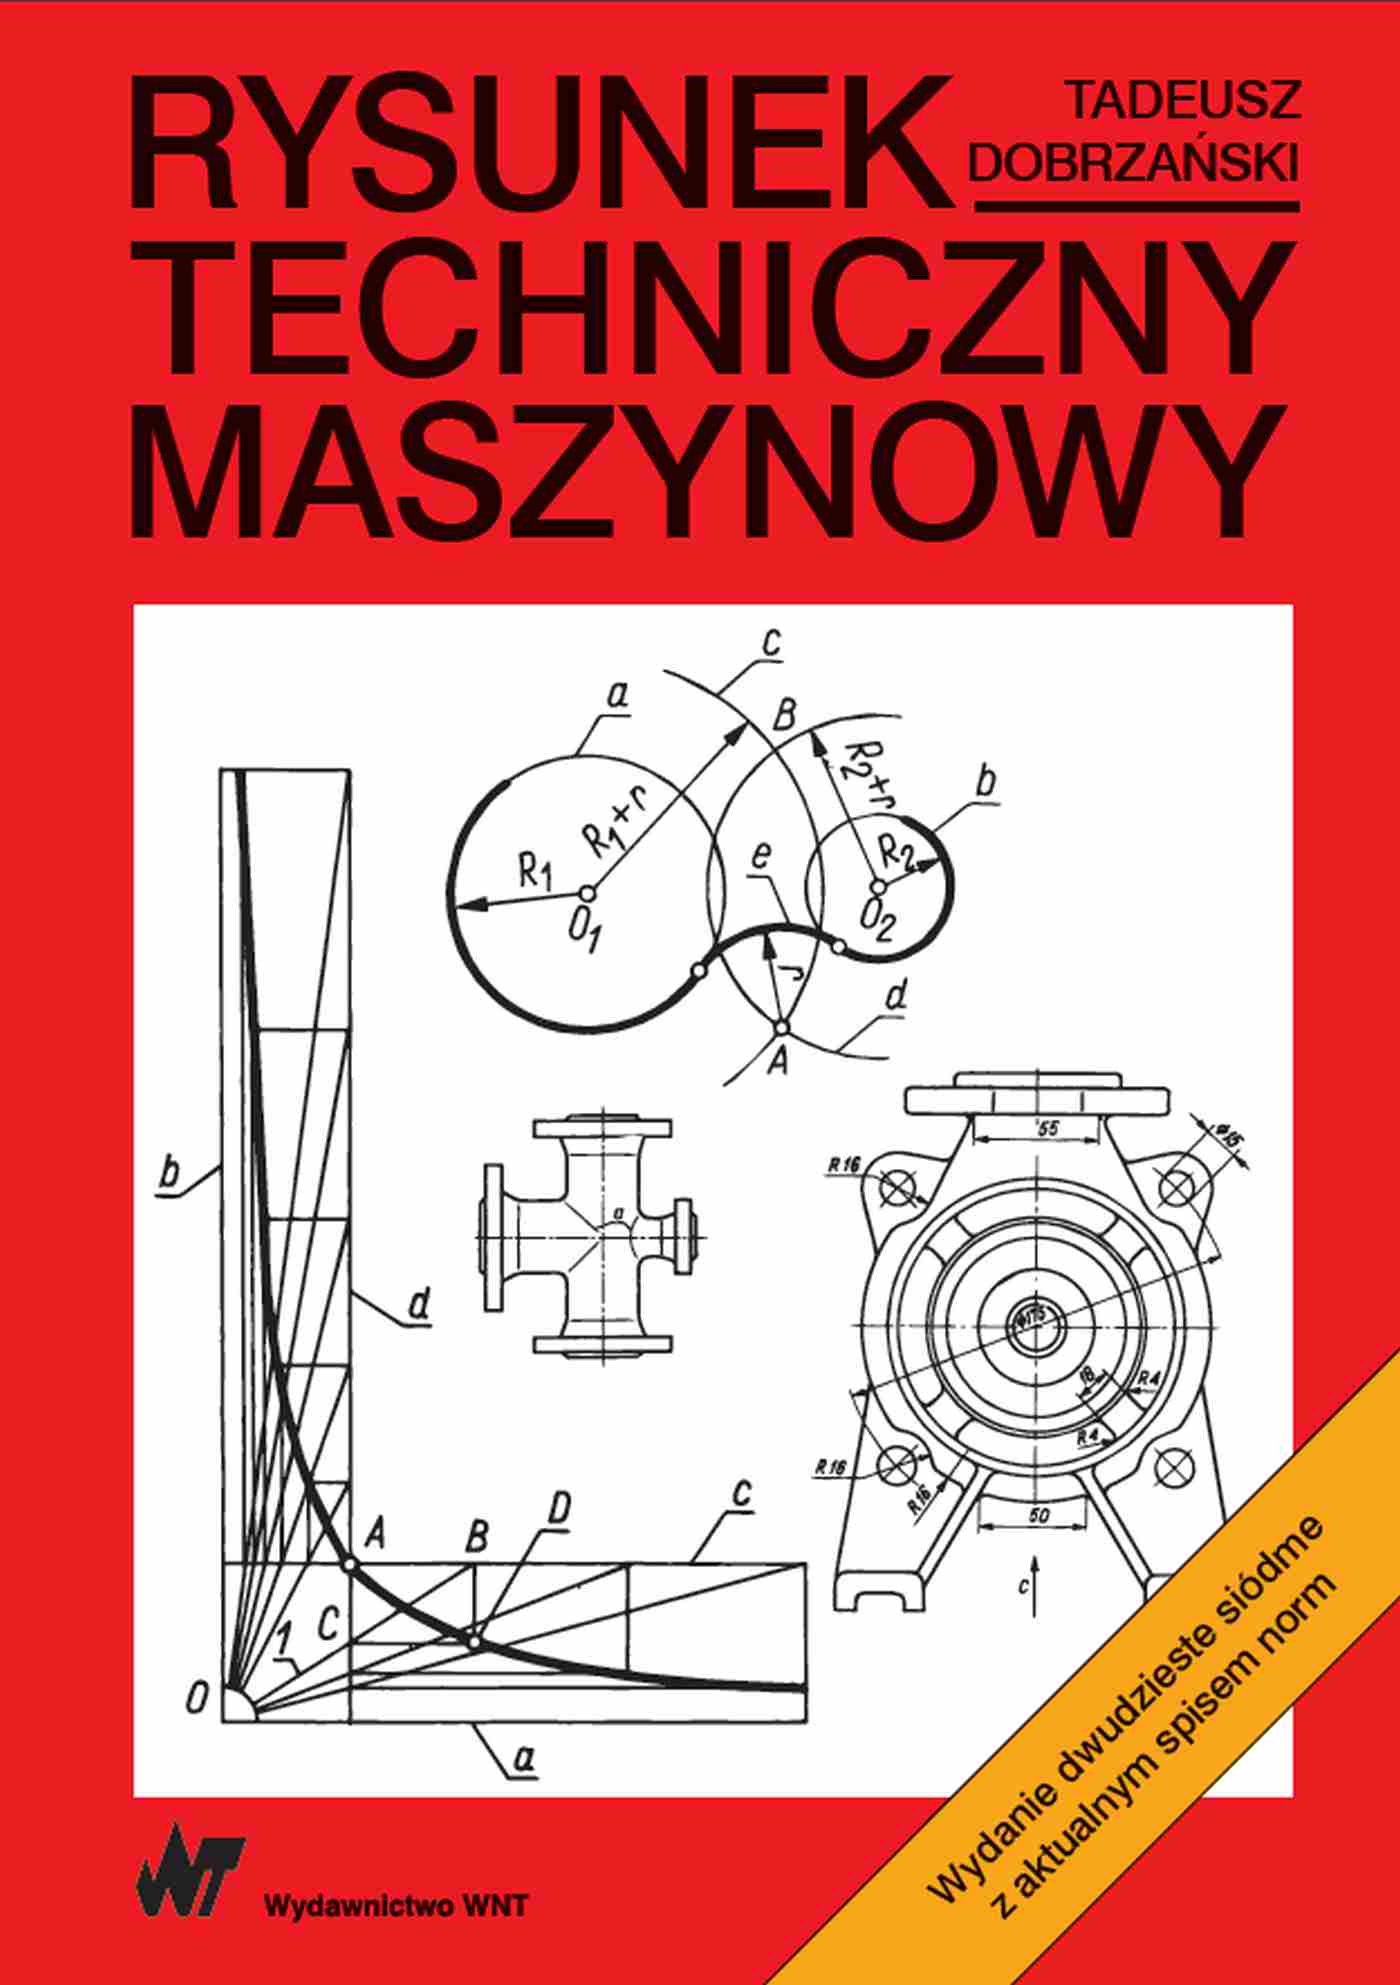 Книга Rysunek techniczny maszynowy Tadeusz Dobrzański